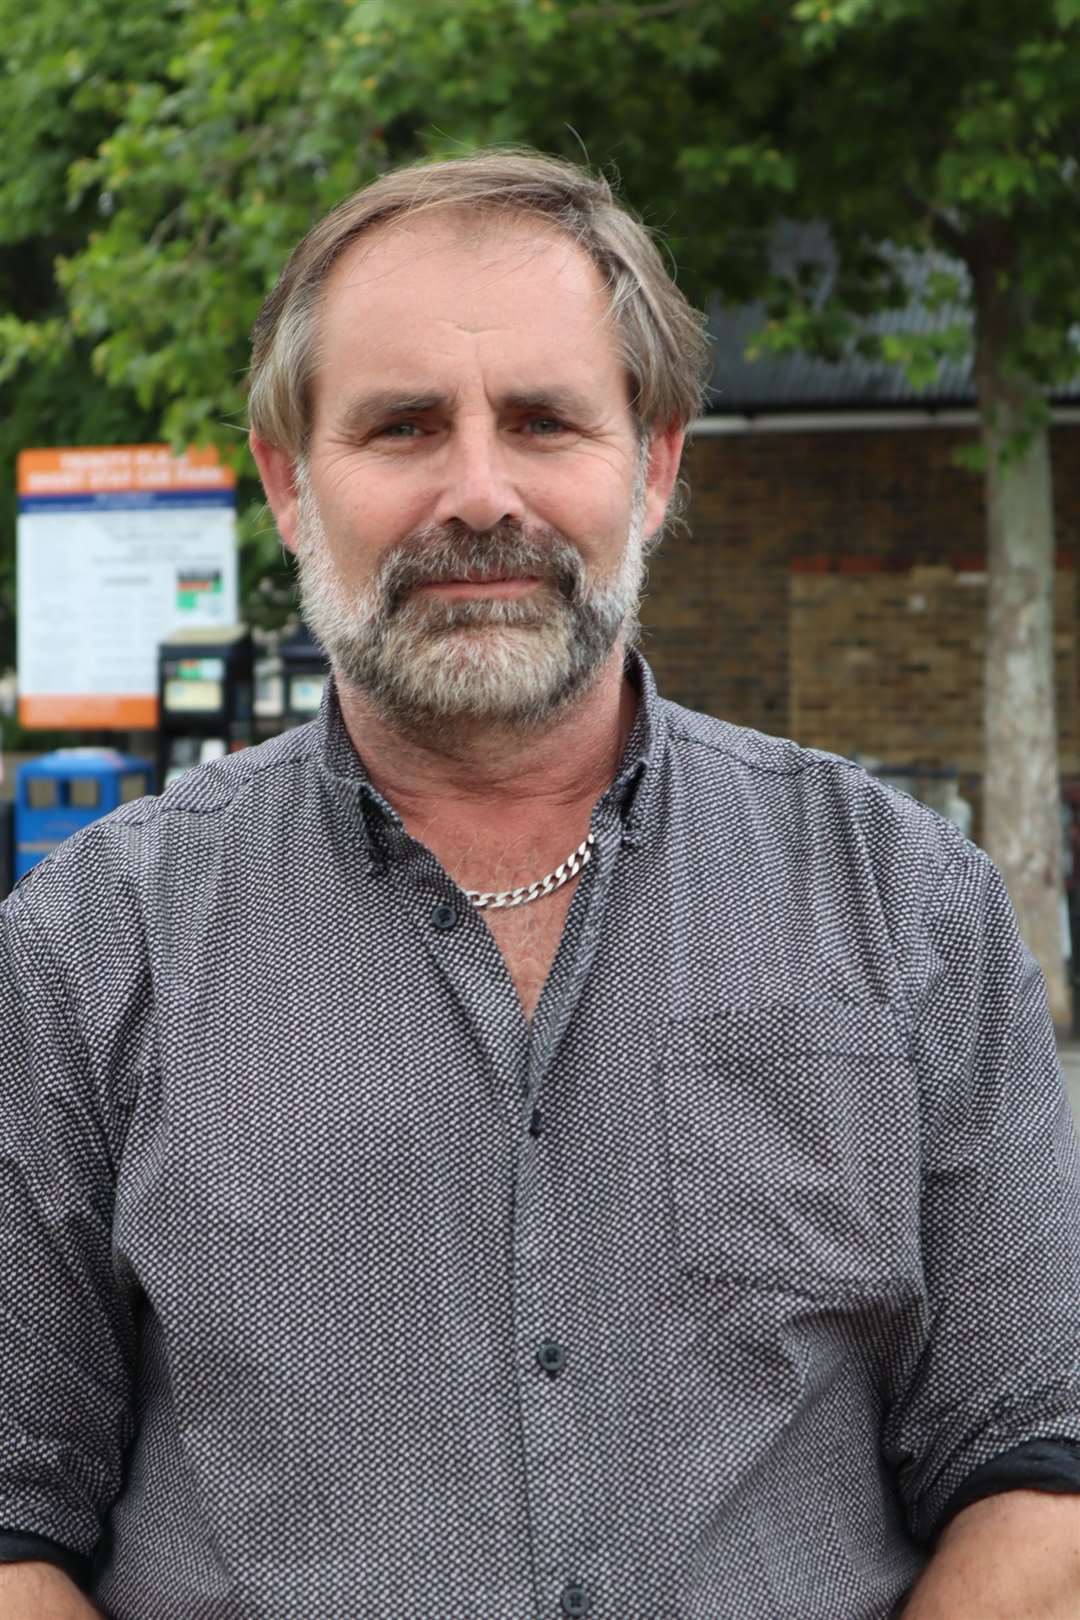 Matt Brown, chairman of Sheerness Town Council